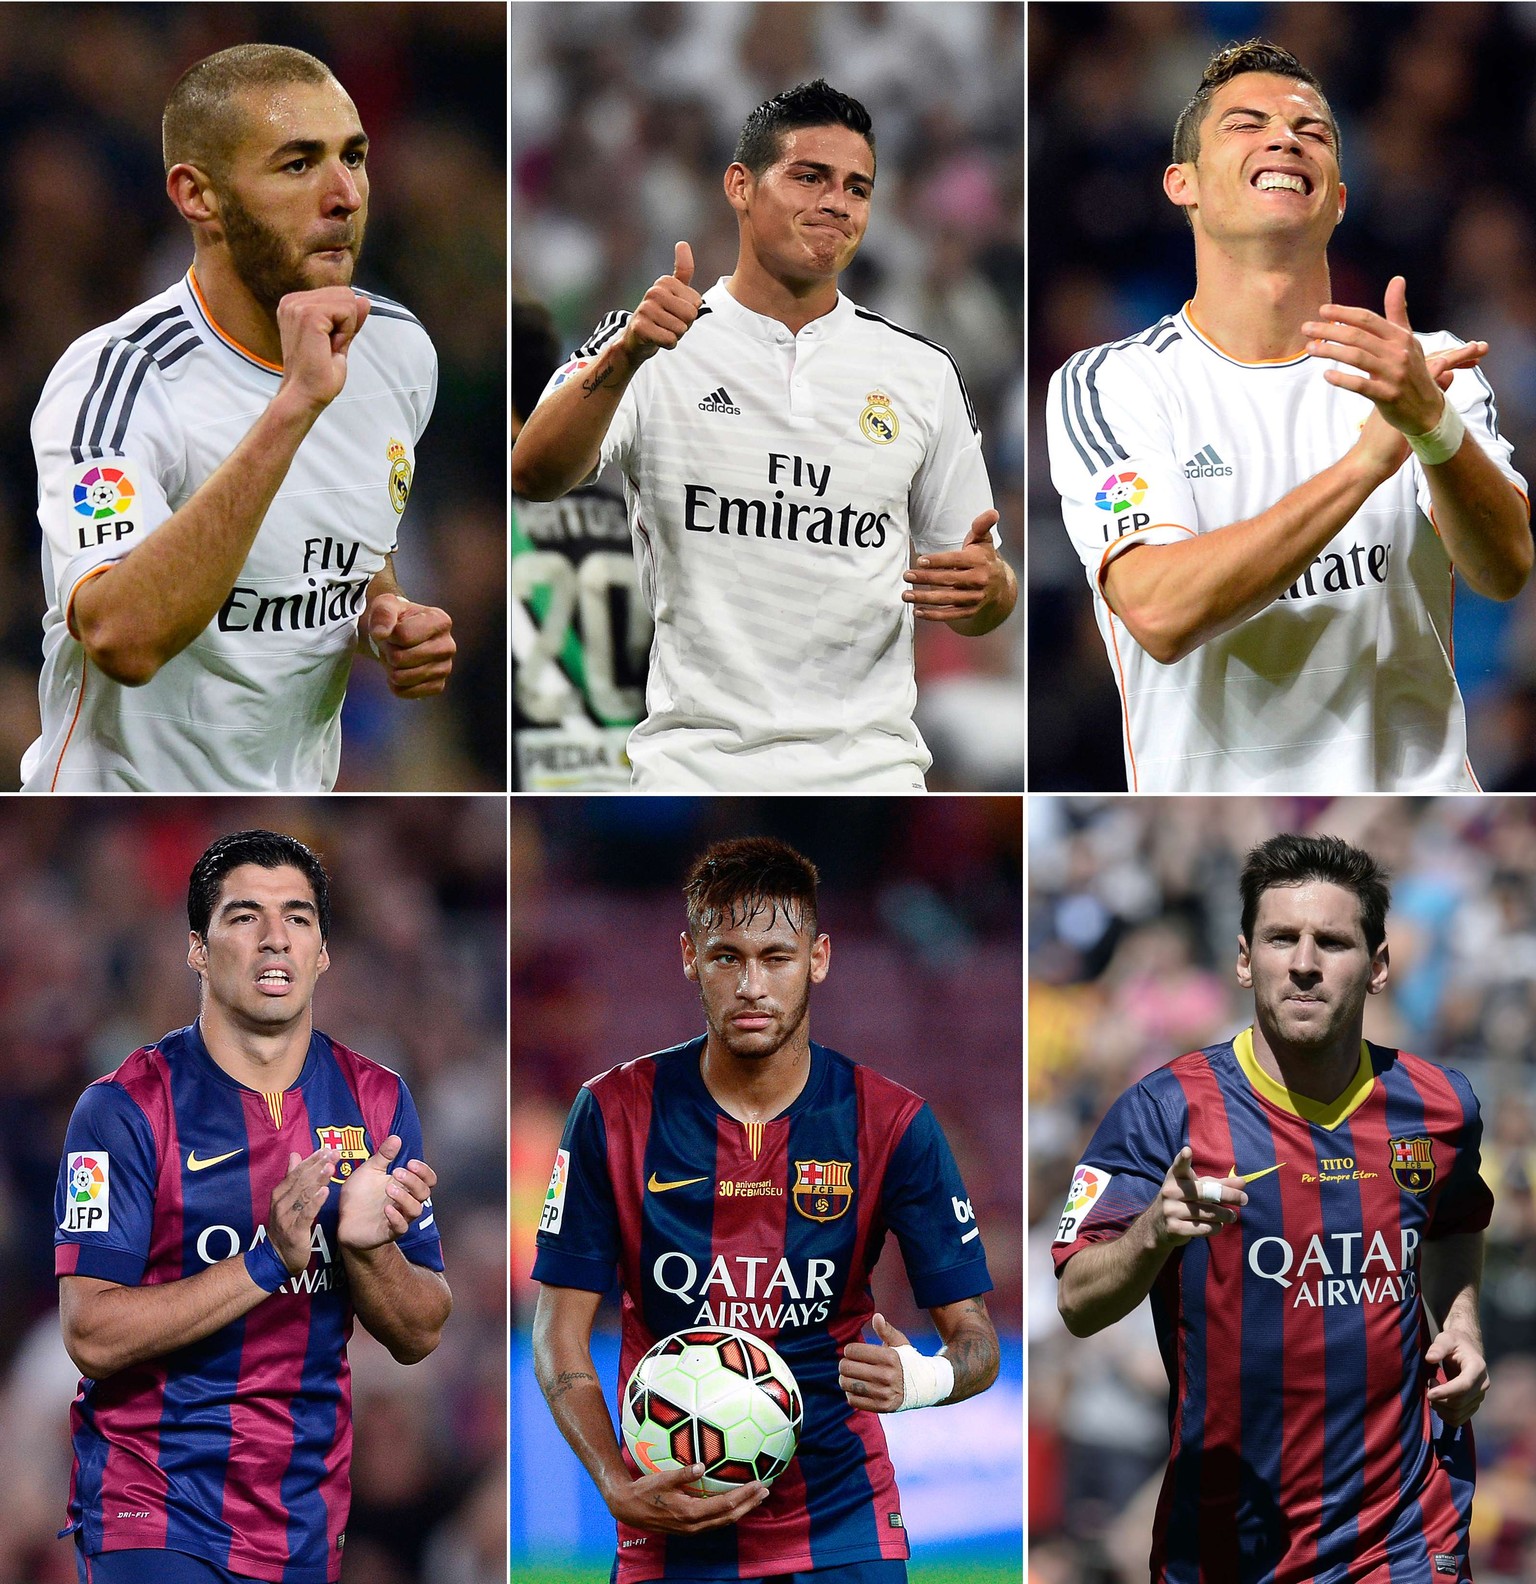 Im Uhrzeigersinn (von oben links): Karim Benzema, James Rodriguez, Cristiano Ronaldo, Luis Suarez, Neymar, Lionel Messi.